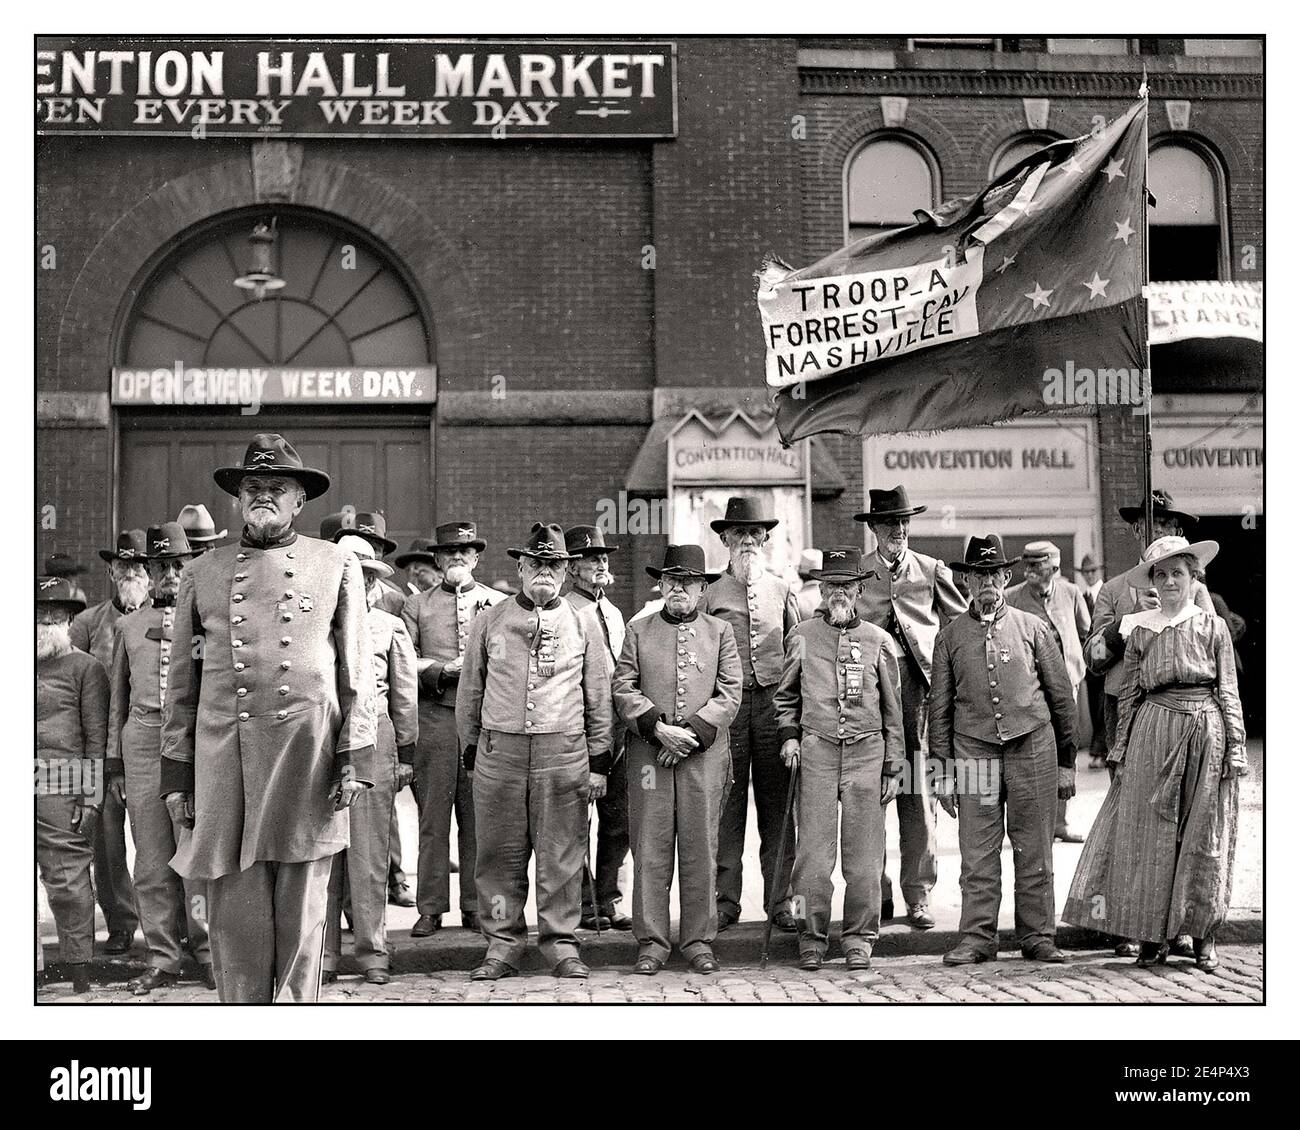 Les années 1900 “Confederate armée vétéran recrute groupe de photo de réunion , Washington, Etats-Unis 1917.”troupe A Forrest Cavalry Nashville Confederate Flag” Banque D'Images